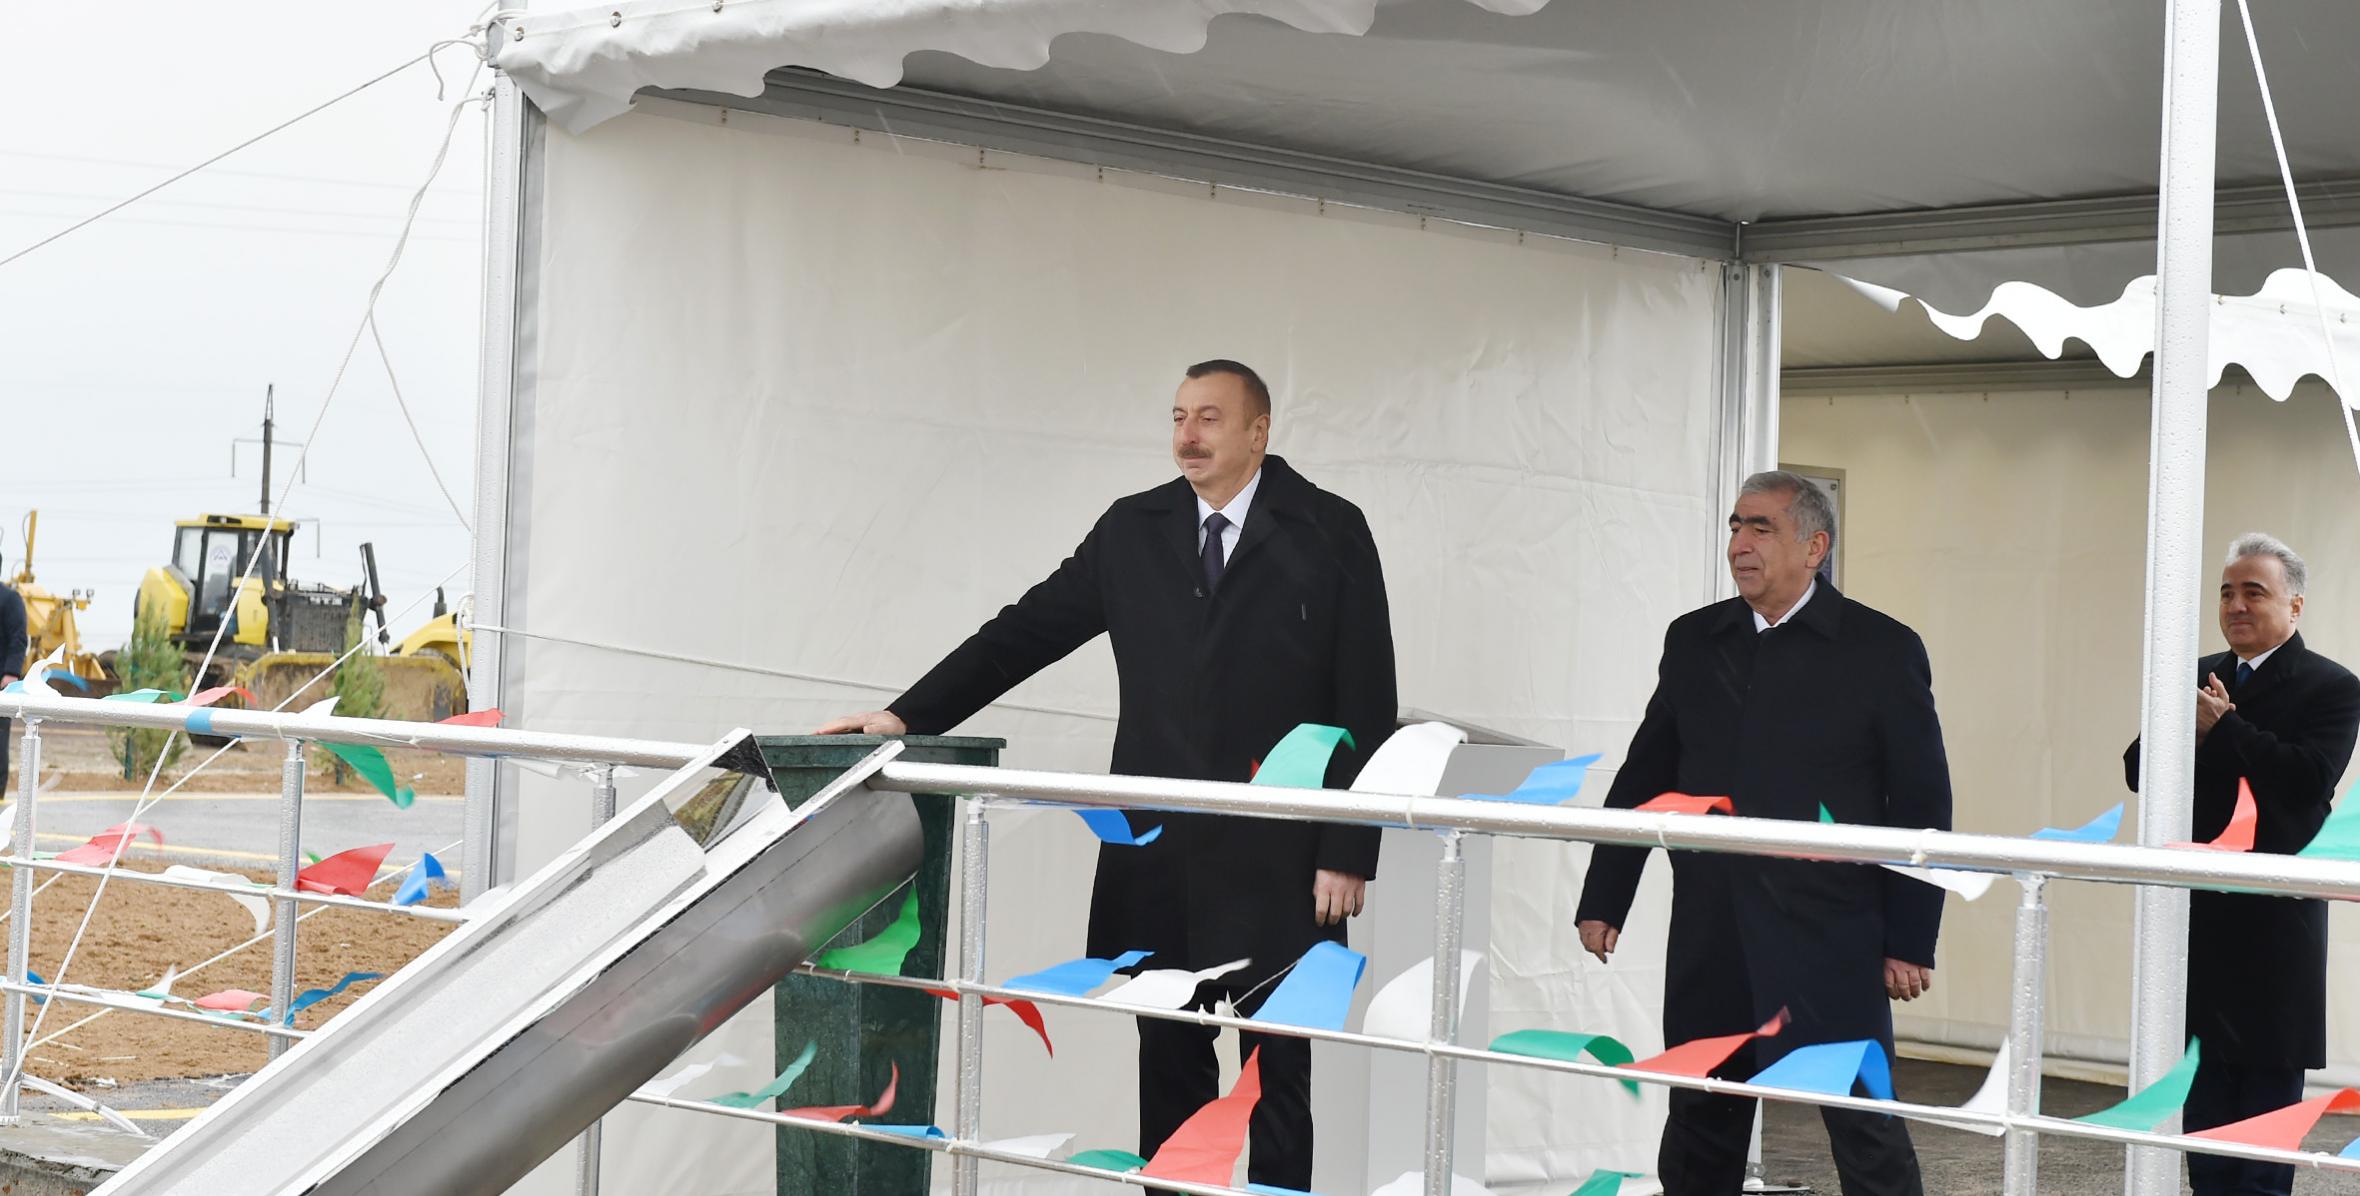 Ильхам Алиев принял участие в церемонии закладки фундамента новой дороги, которая будет построена на 45-202 километровой части автомагистрали Баку - государственная граница с Российской Федерацией